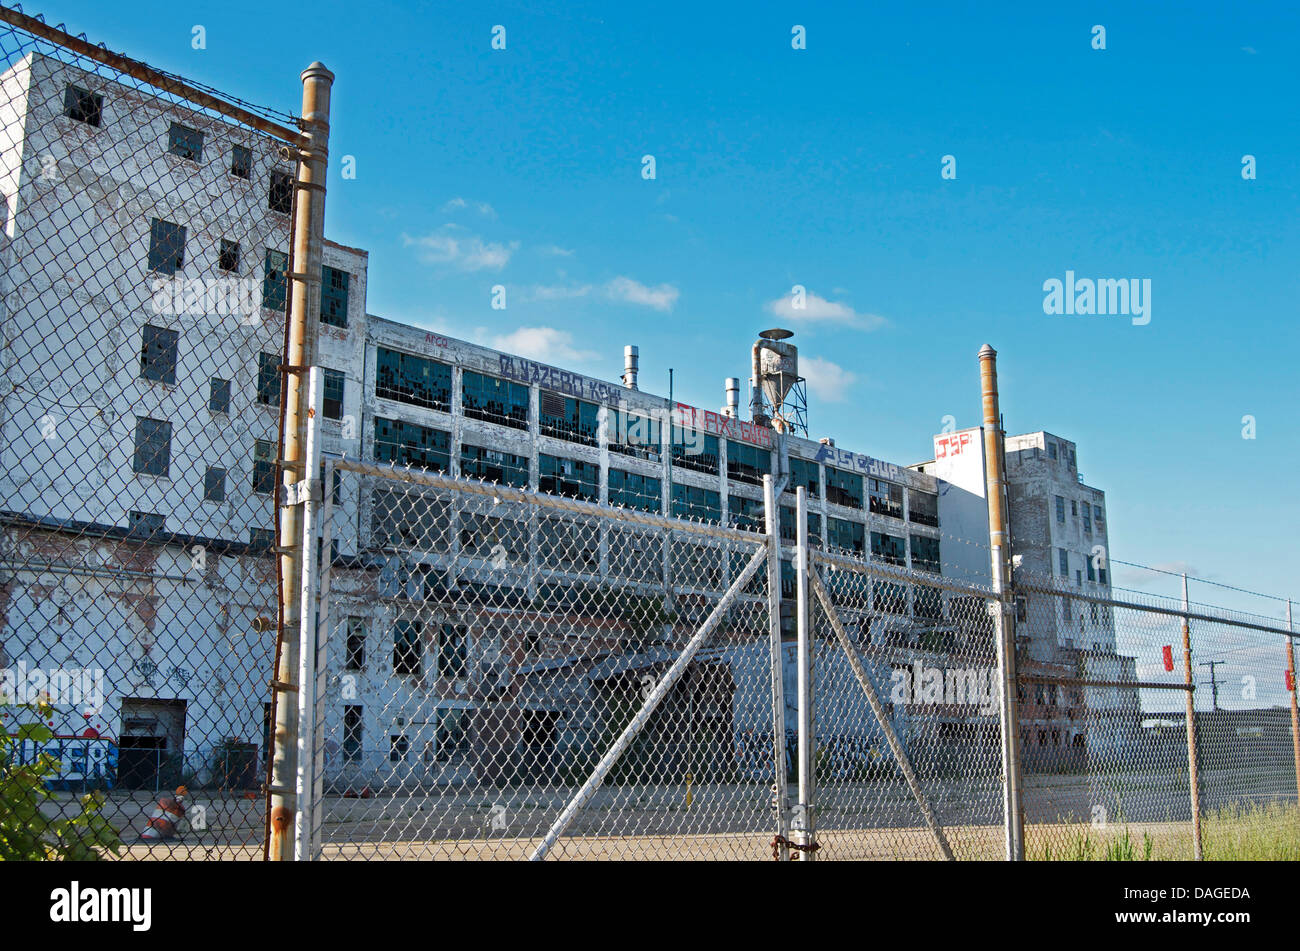 Abandoned Detroit Automotive Factory. Stock Photo